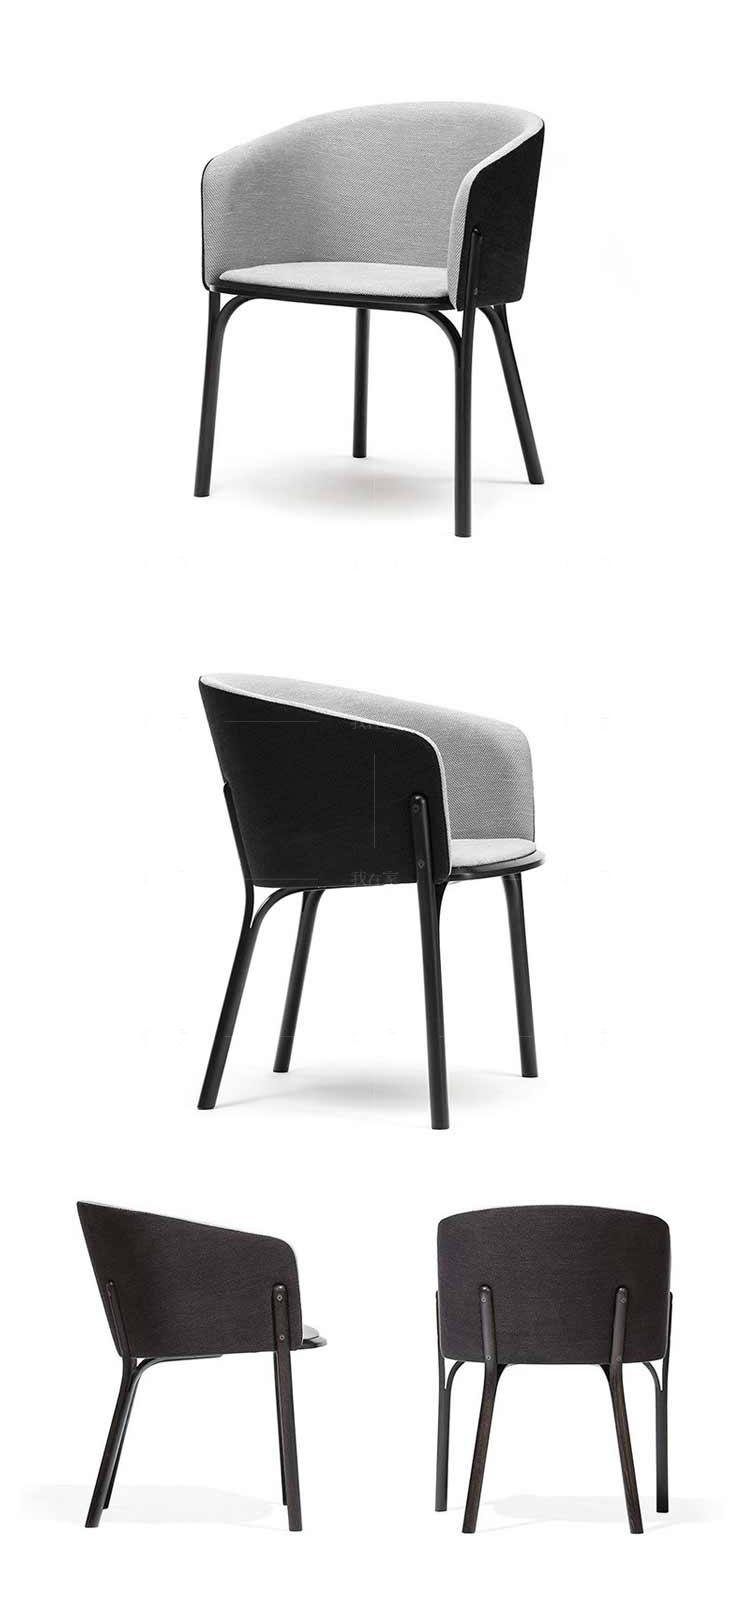 色彩北欧风格分叉椅的家具详细介绍